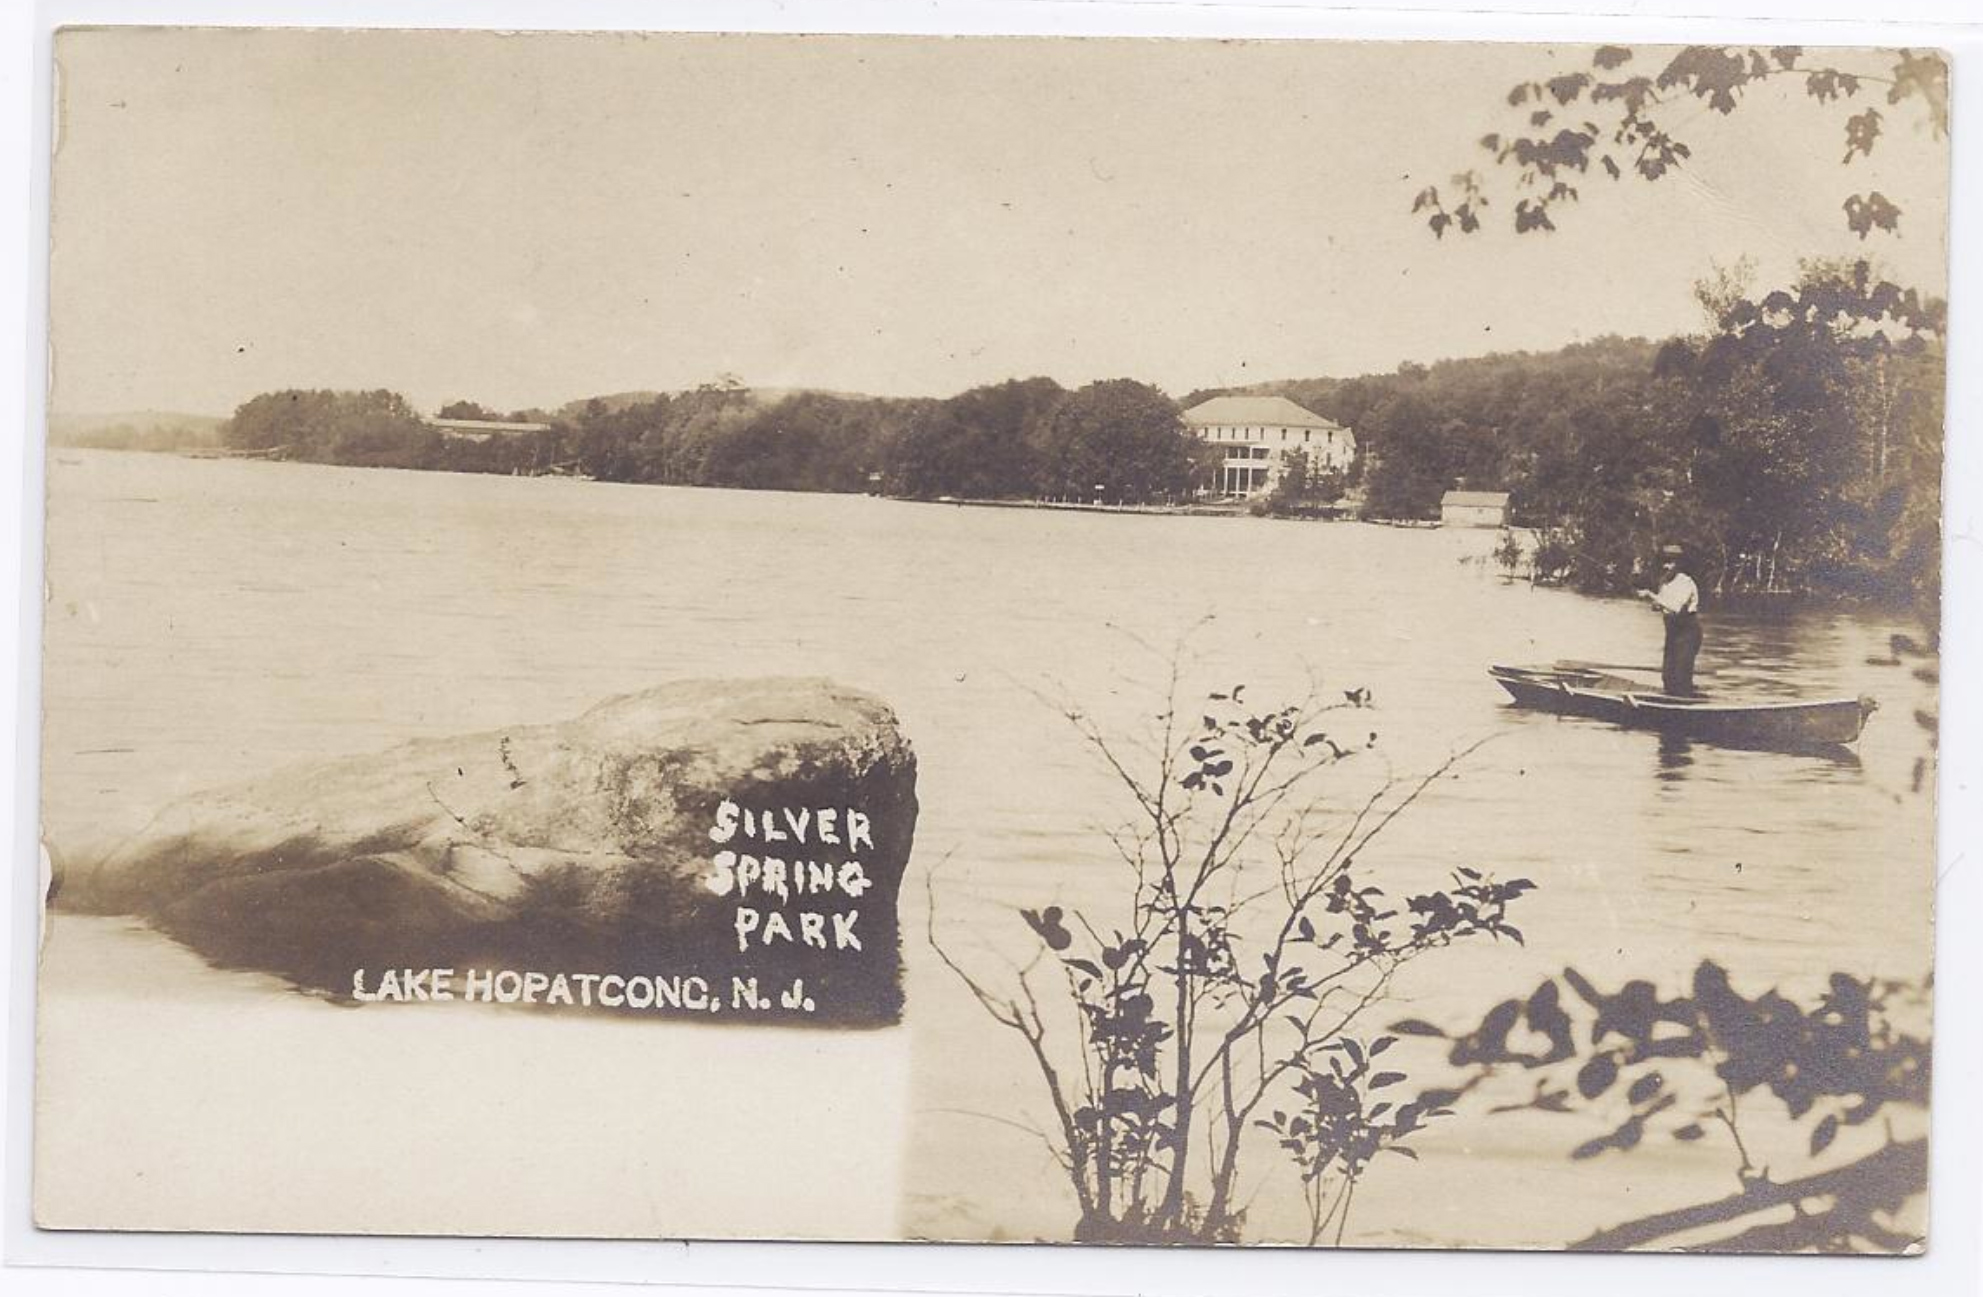 Lake Hopatcong - Fishing at Silver Spring Park - c 1910